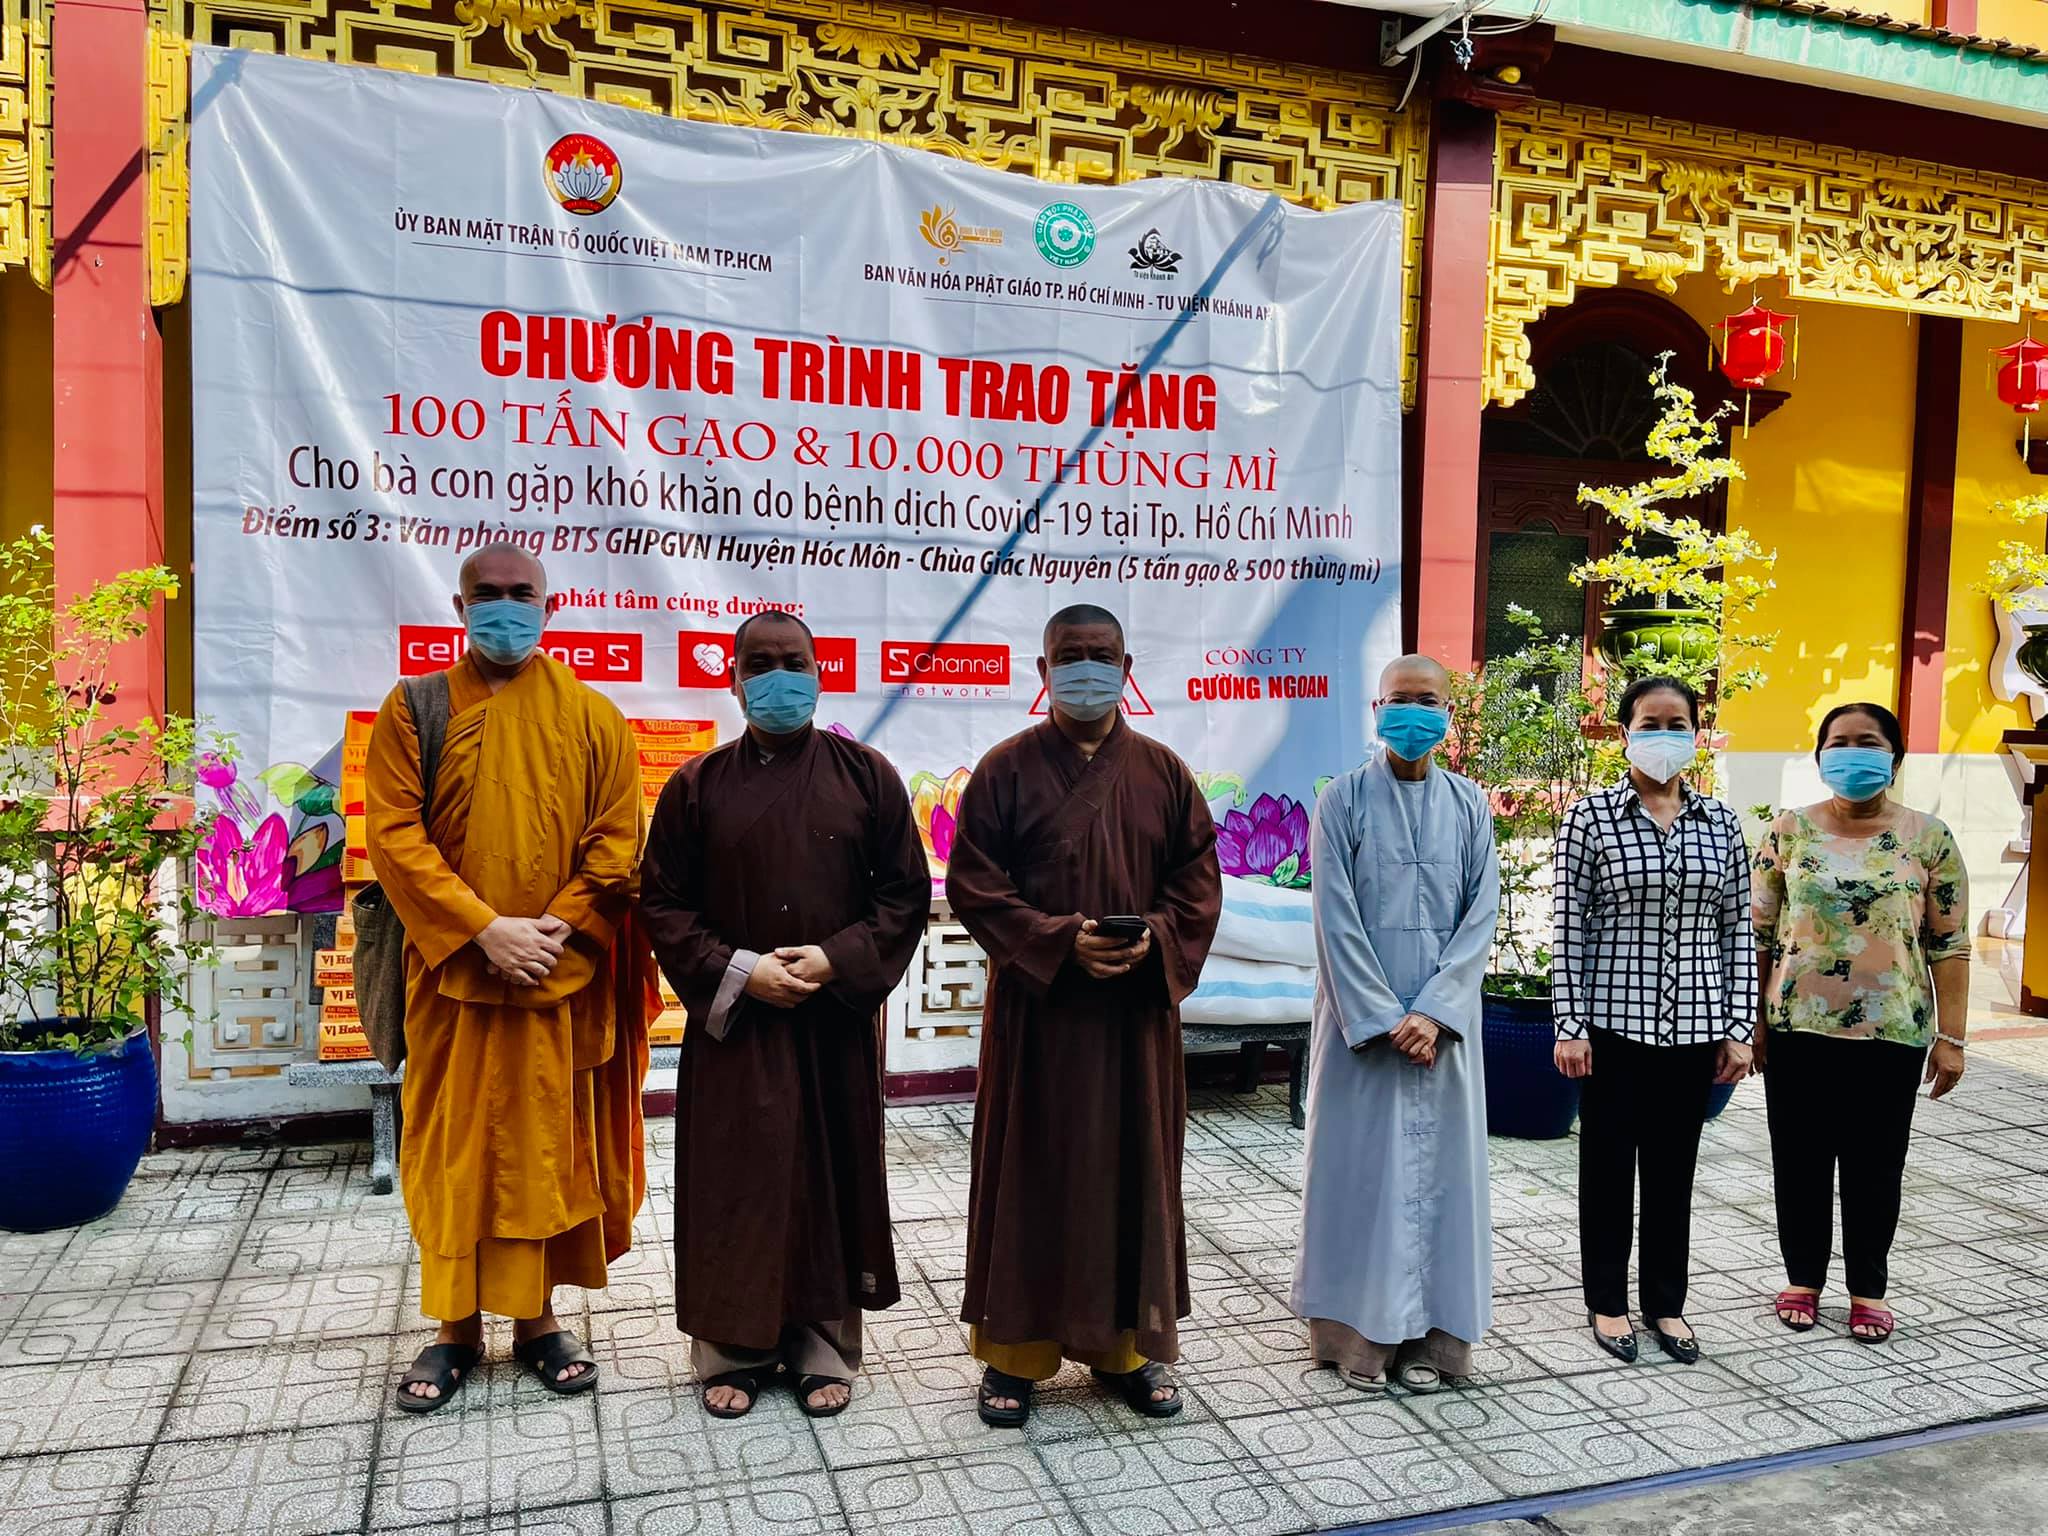 Ban Văn hóa Phật giáo TP.HCM trao 10 tấn gạo và 1.000 thùng mì tại huyện Hóc Môn, Củ Chi